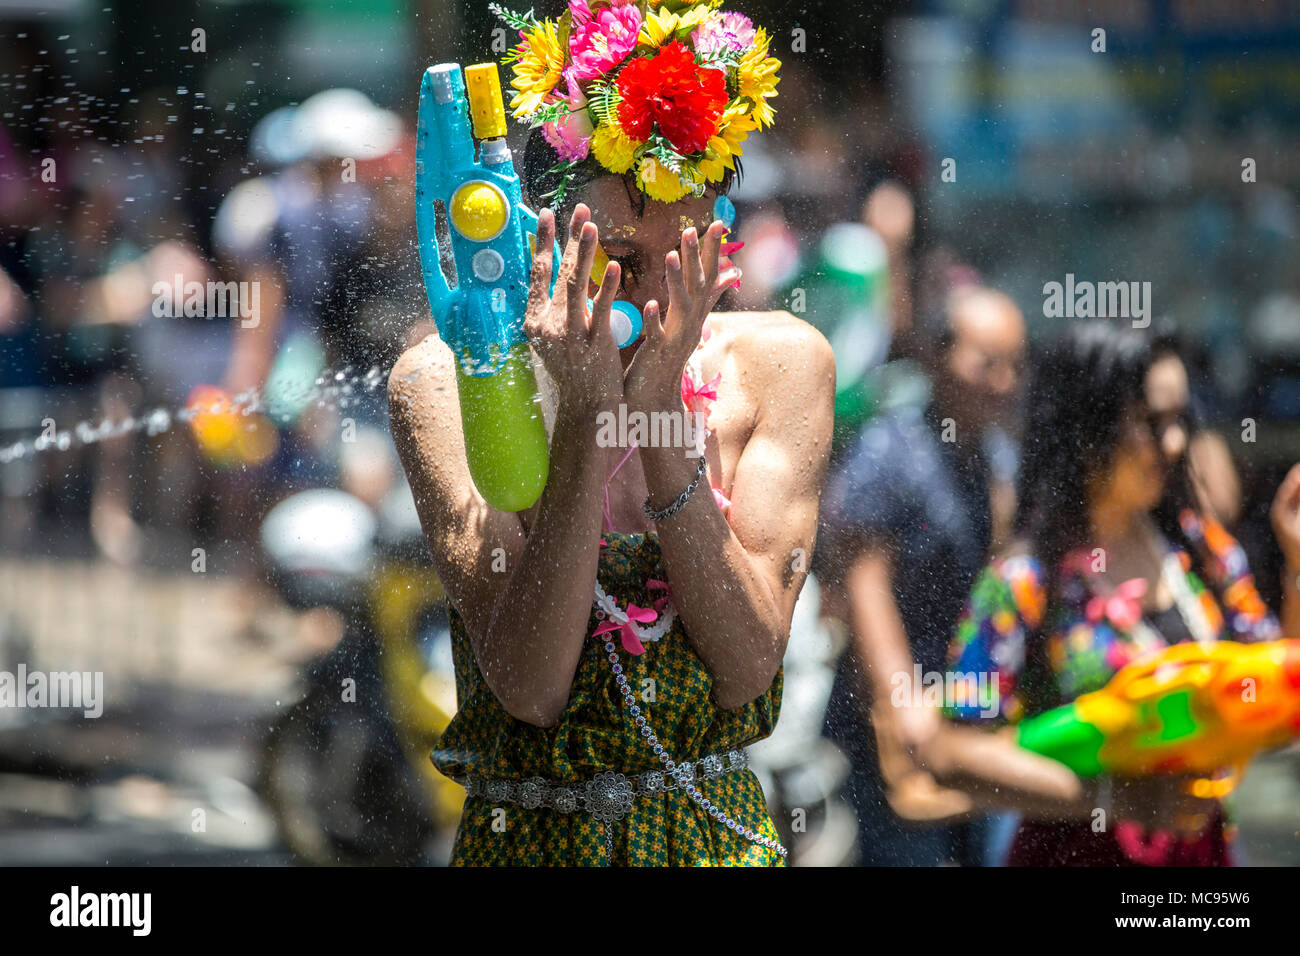 BANGKOK, THAILAND - 13 April, 2018: die Menschen auf den Straßen von Bangkok während des ersten Tages des Songkran Festival, Thai Neujahr feiern. Stockfoto